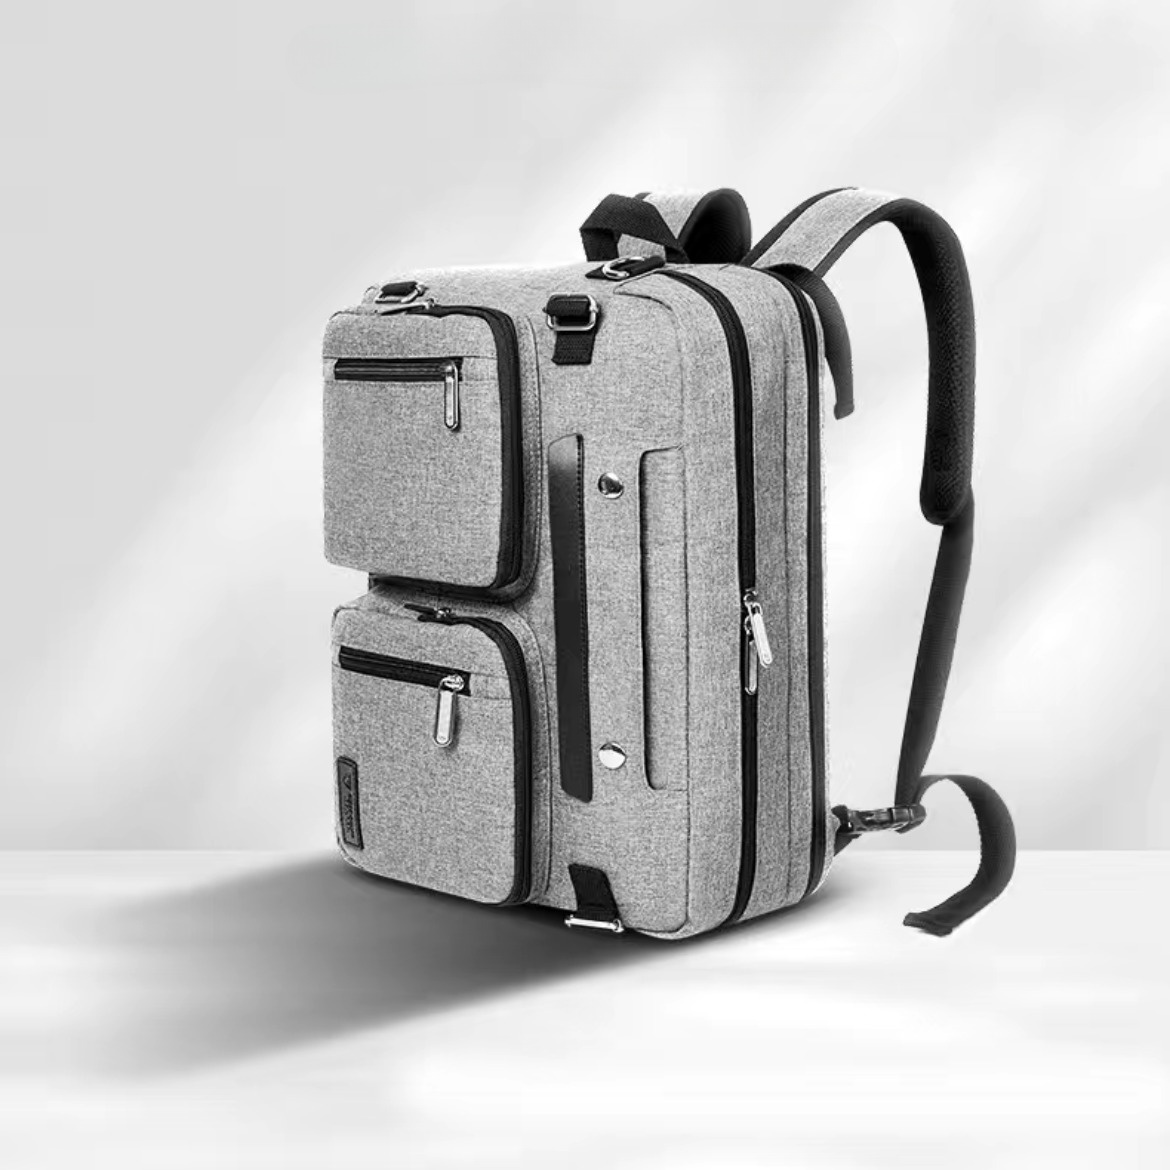 Універсальний бізнес рюкзак для ноутбука до 15,6 дюймів, сумка для подорожей, сірий